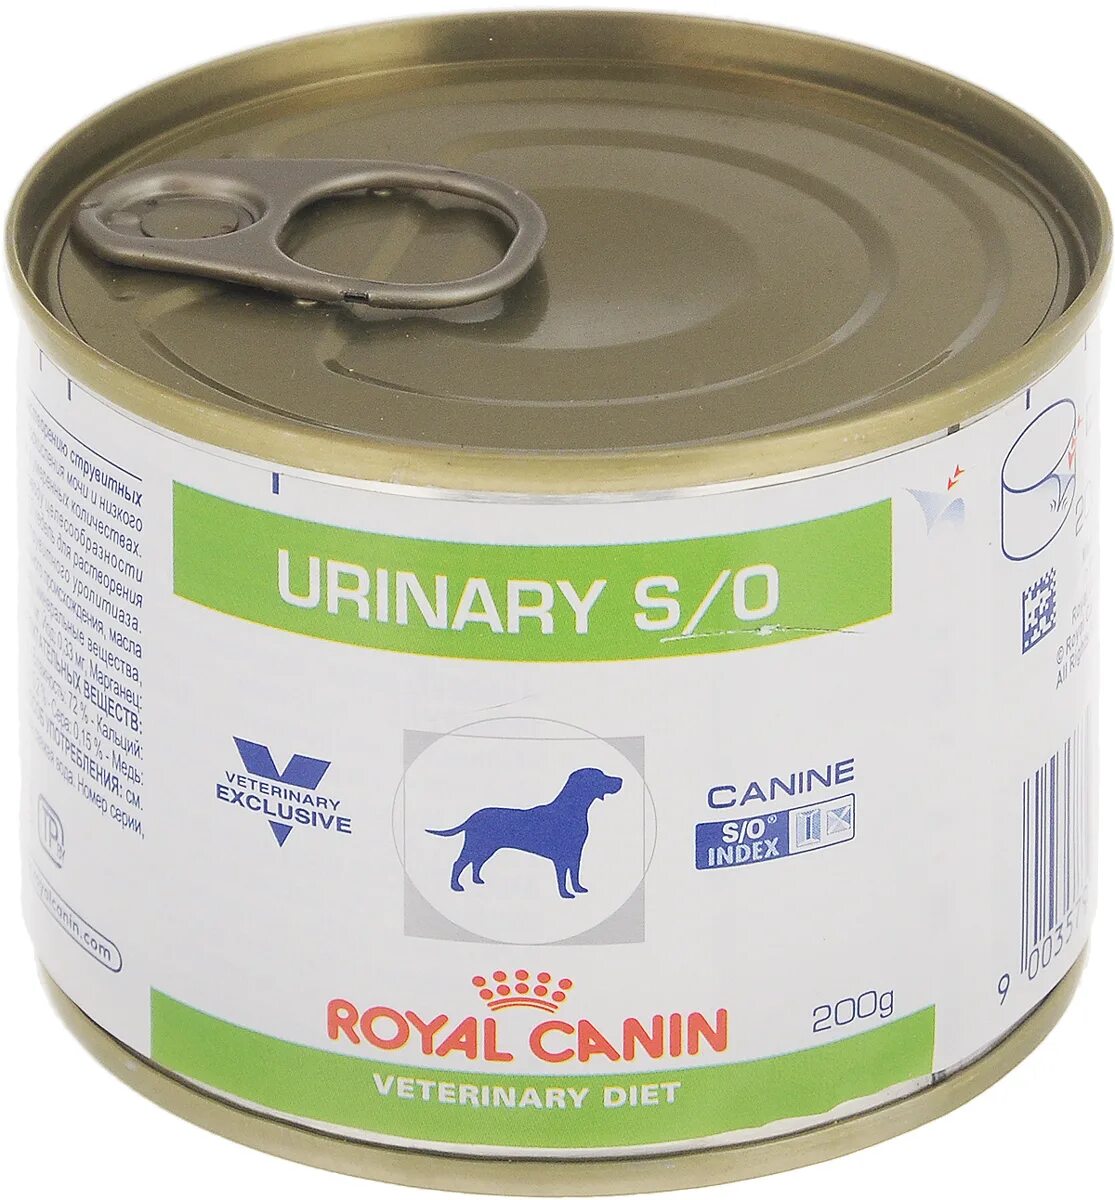 Royal Canin Urinary для собак консервы. Роял Канин Уринари s/o для собак консервы. Роял Канин консервы д/собак Уринари s/o 410 гр. Роял Канин Уринари паштет для собак. Urinary s o купить